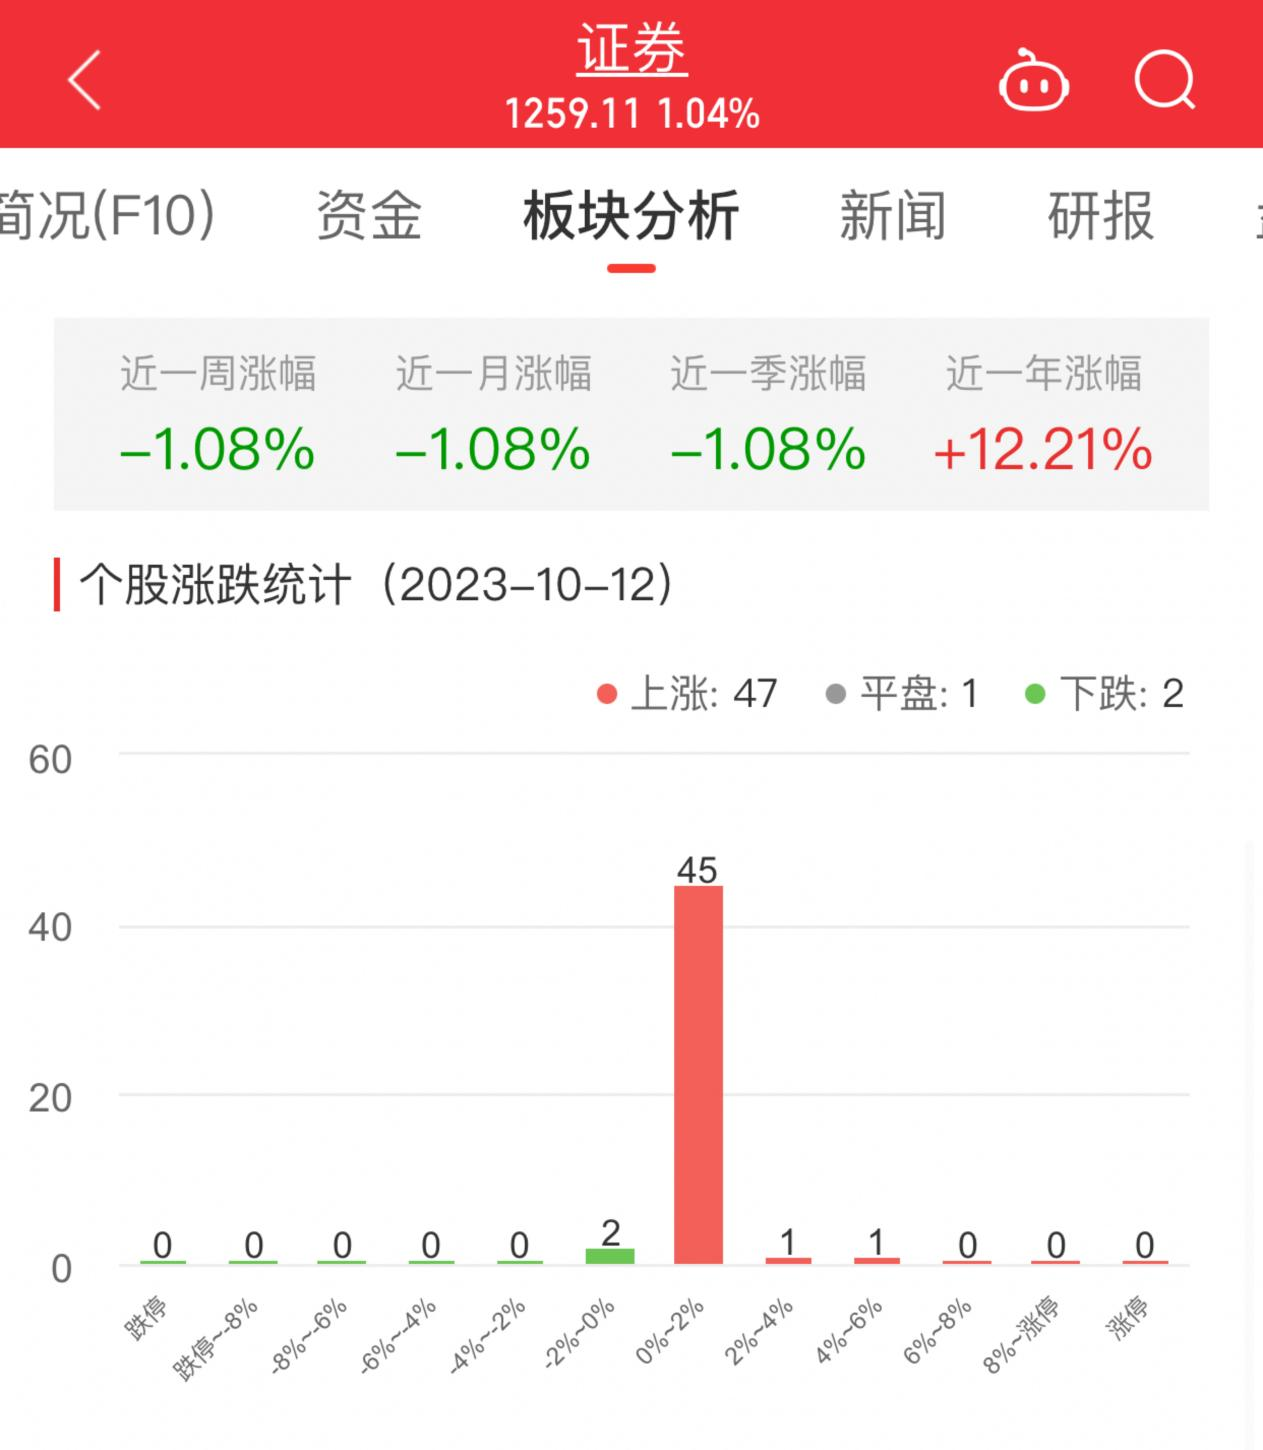 证券板块涨1.04% 中国银河涨4.16%居首